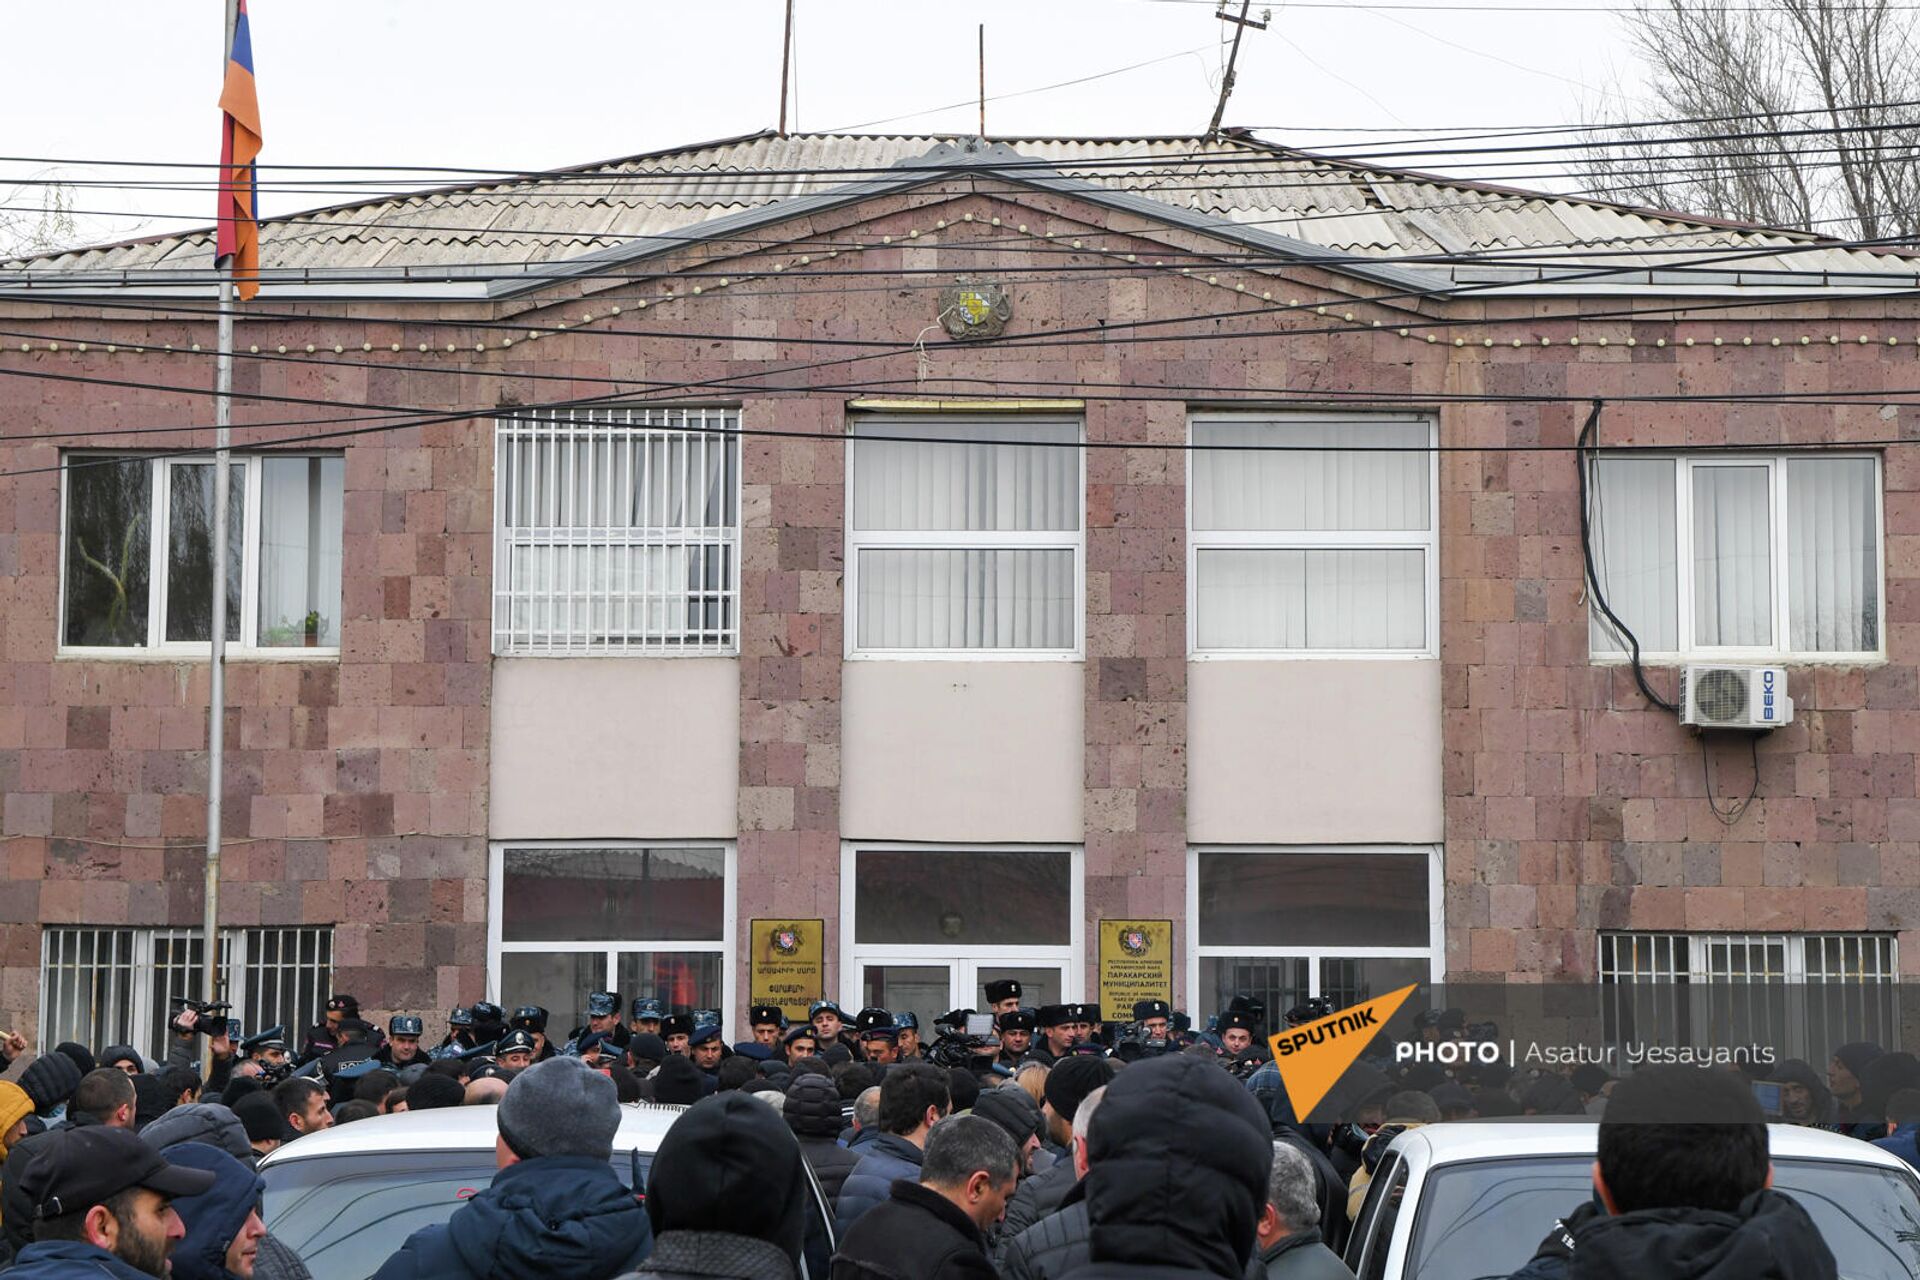 Полиция у здания паракарского муниципалитета во время акции протеста в Паракаре - Sputnik Արմենիա, 1920, 23.12.2021